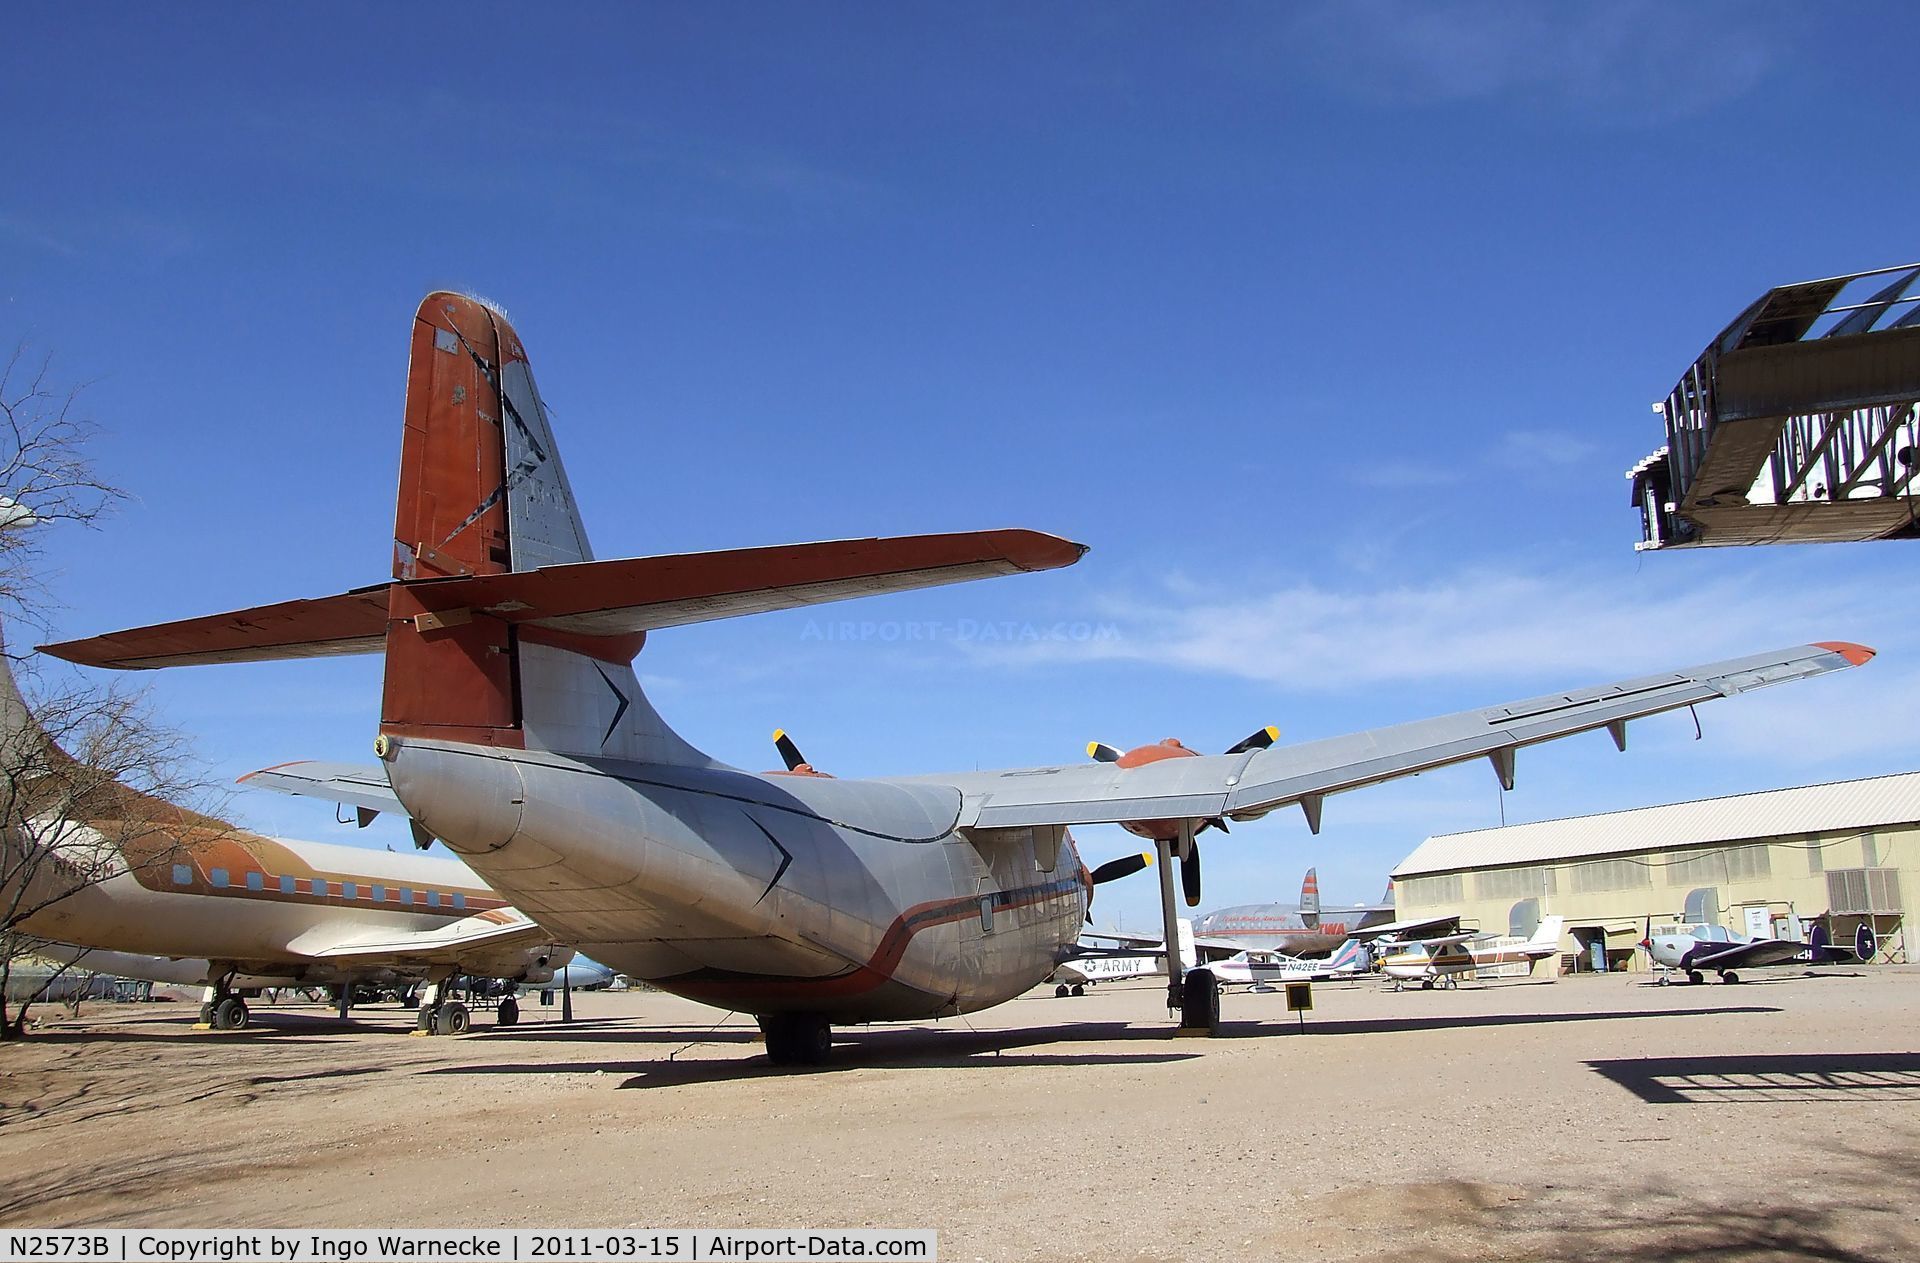 N2573B, 1948 Northrop YC-125A Raider C/N 48636 (2520), Northrop YC-125A Raider at the Pima Air & Space Museum, Tucson AZ